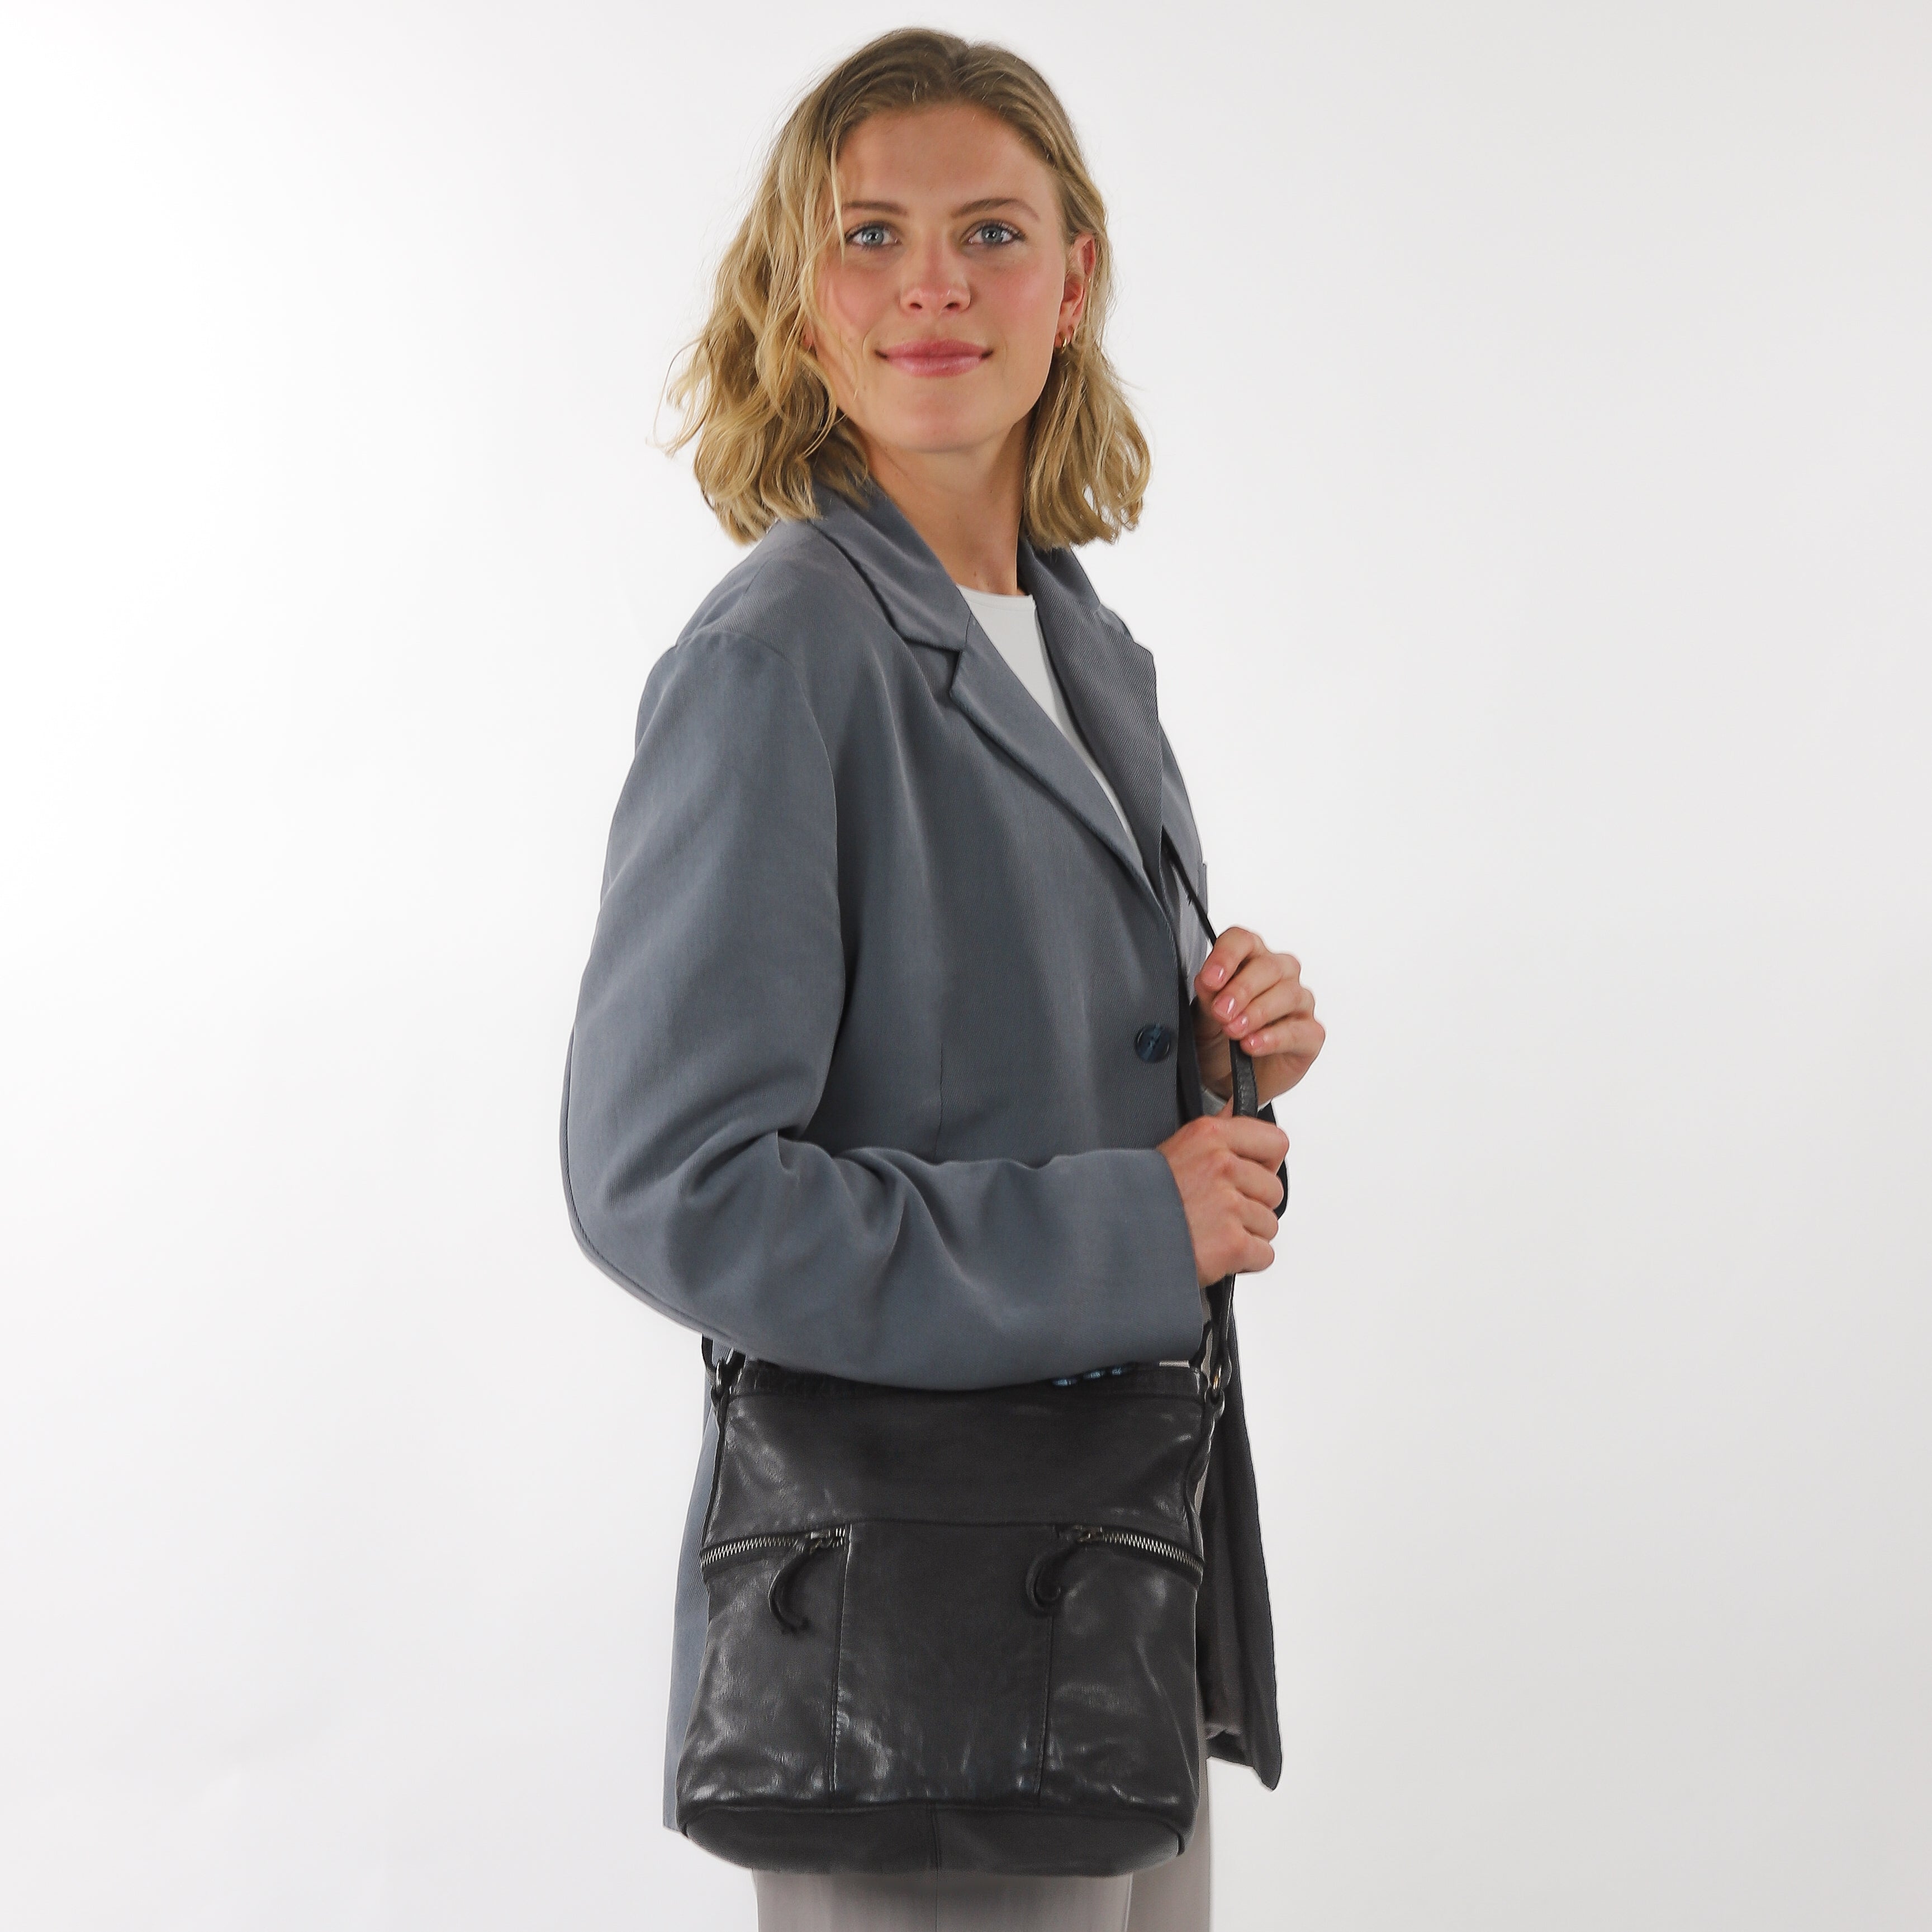 Shoulder bag 'Chessi' ultimate gray - CL 35556